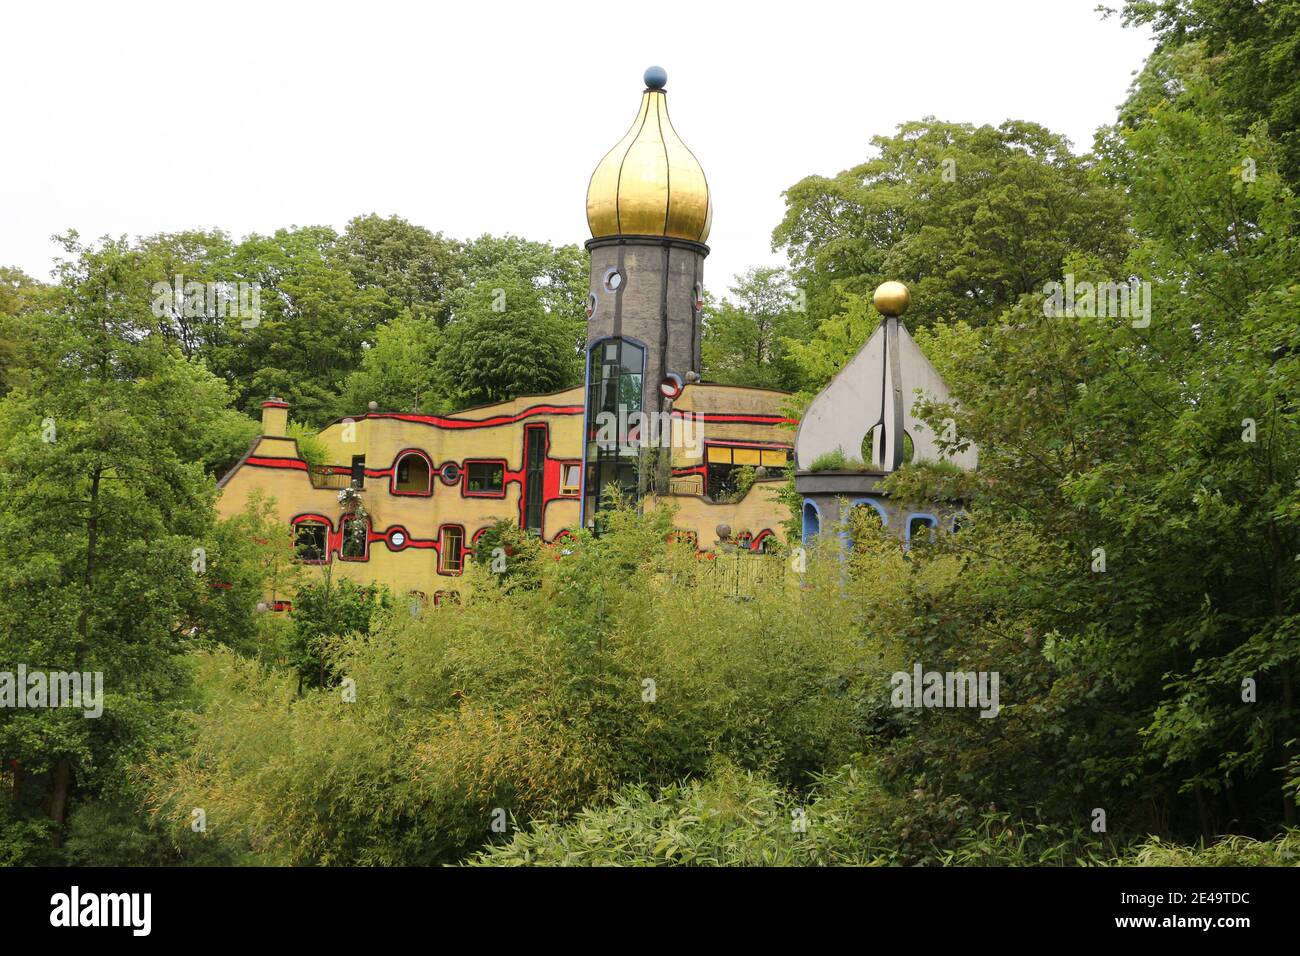 Impressionen aus dem Grugapark in Essen Stock Photo